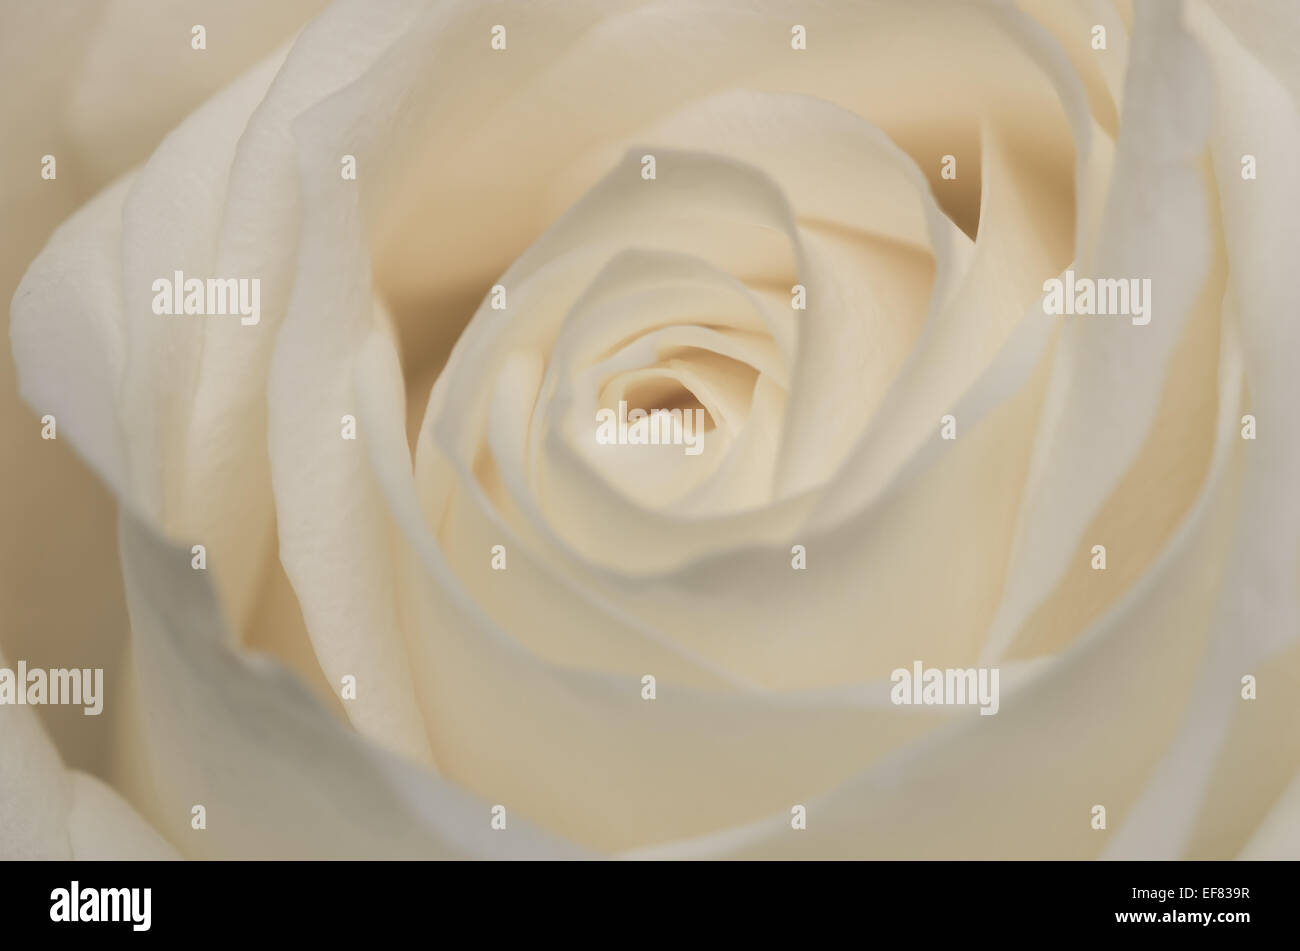 Un delicato close up del cuore di una rosa. Mi piace il modo in cui i petali formano un pattern di vorticazione disegno l'occhio nell'immagine. Foto Stock